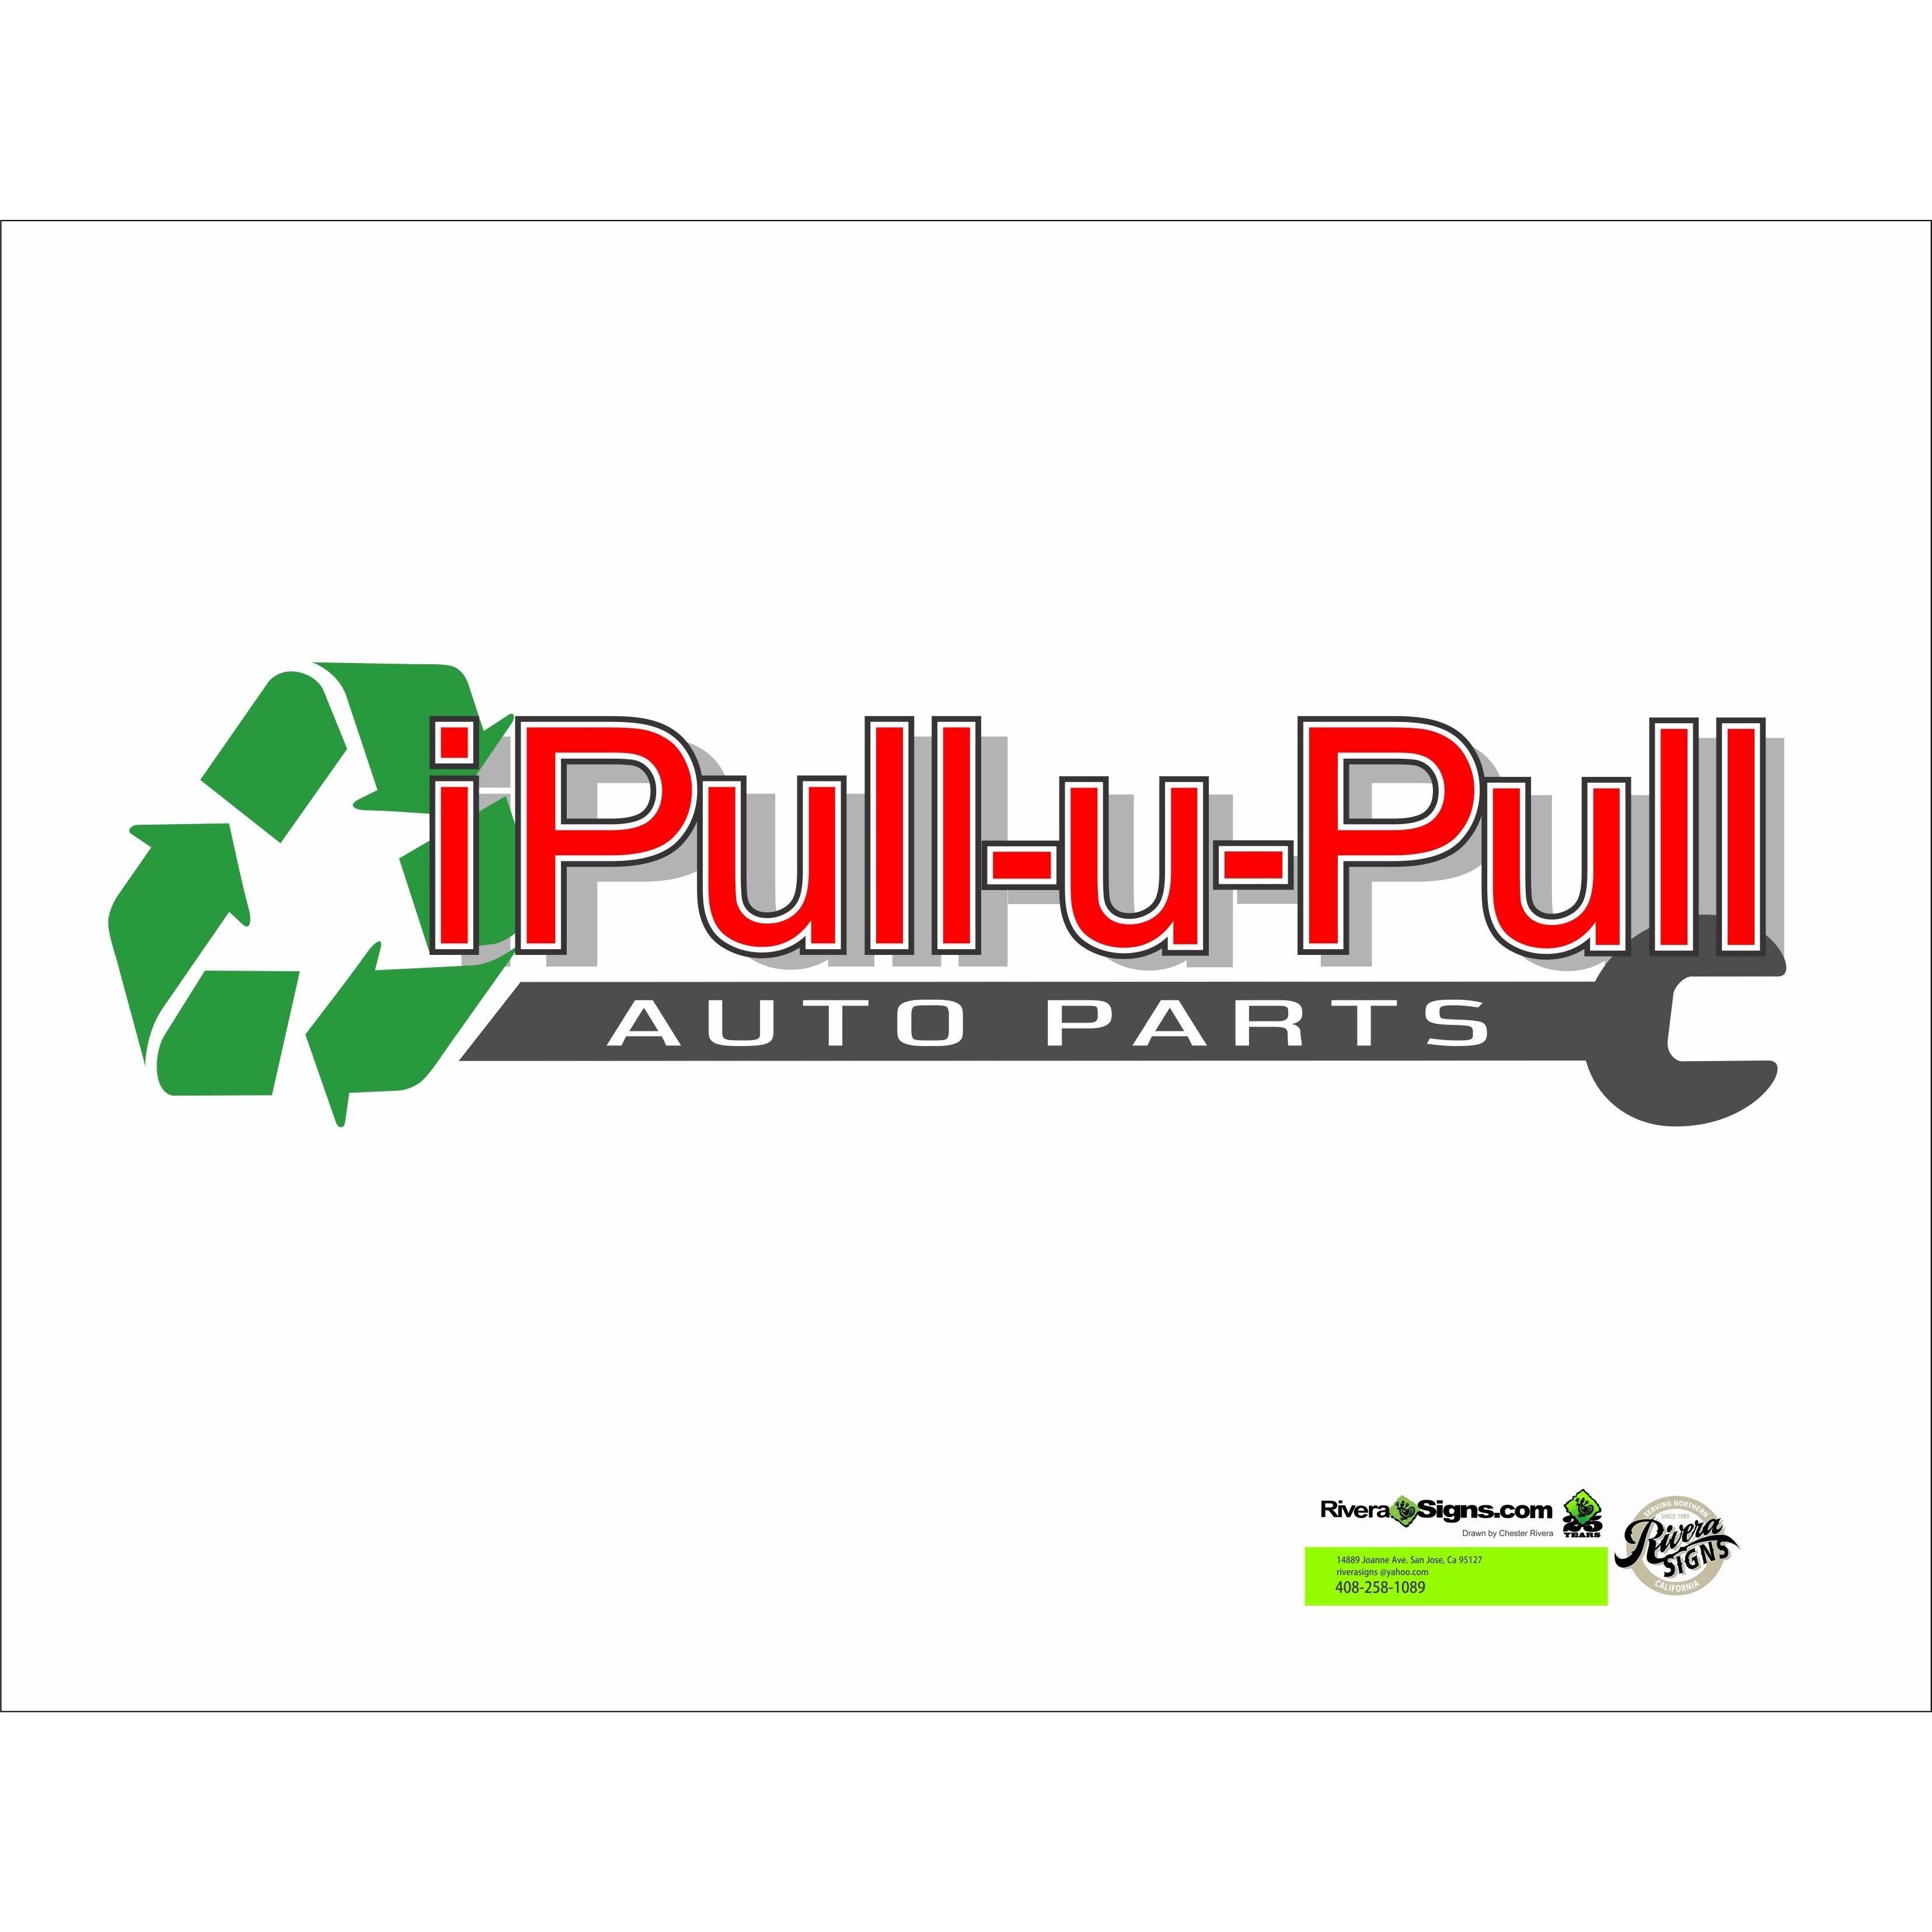 iPull-uPull Auto Parts Logo